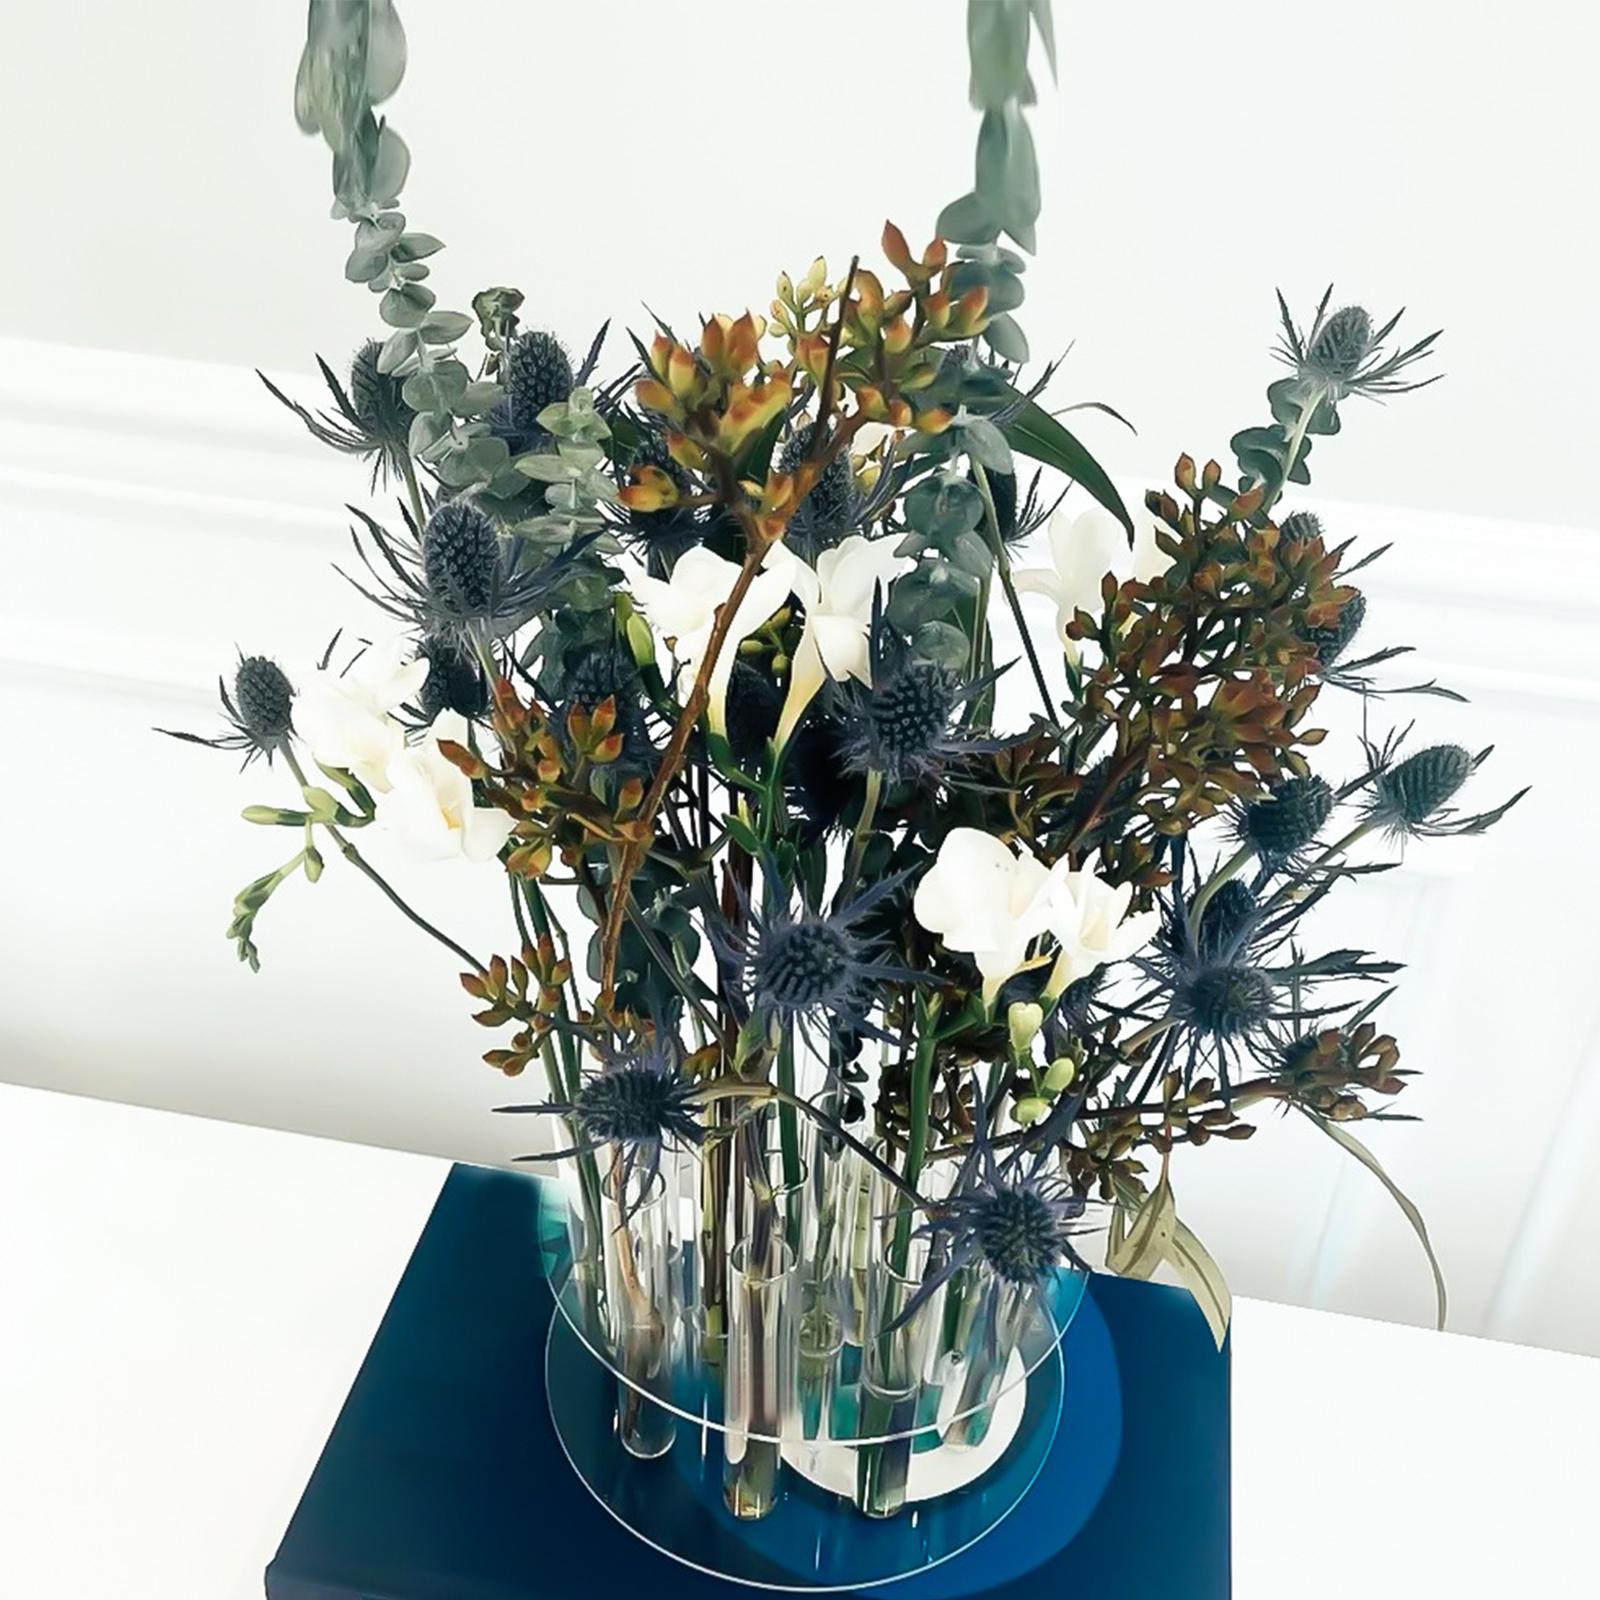 Hydroponic Plant Holder Centerpiece Flower Vase for Home Living Room Desktop